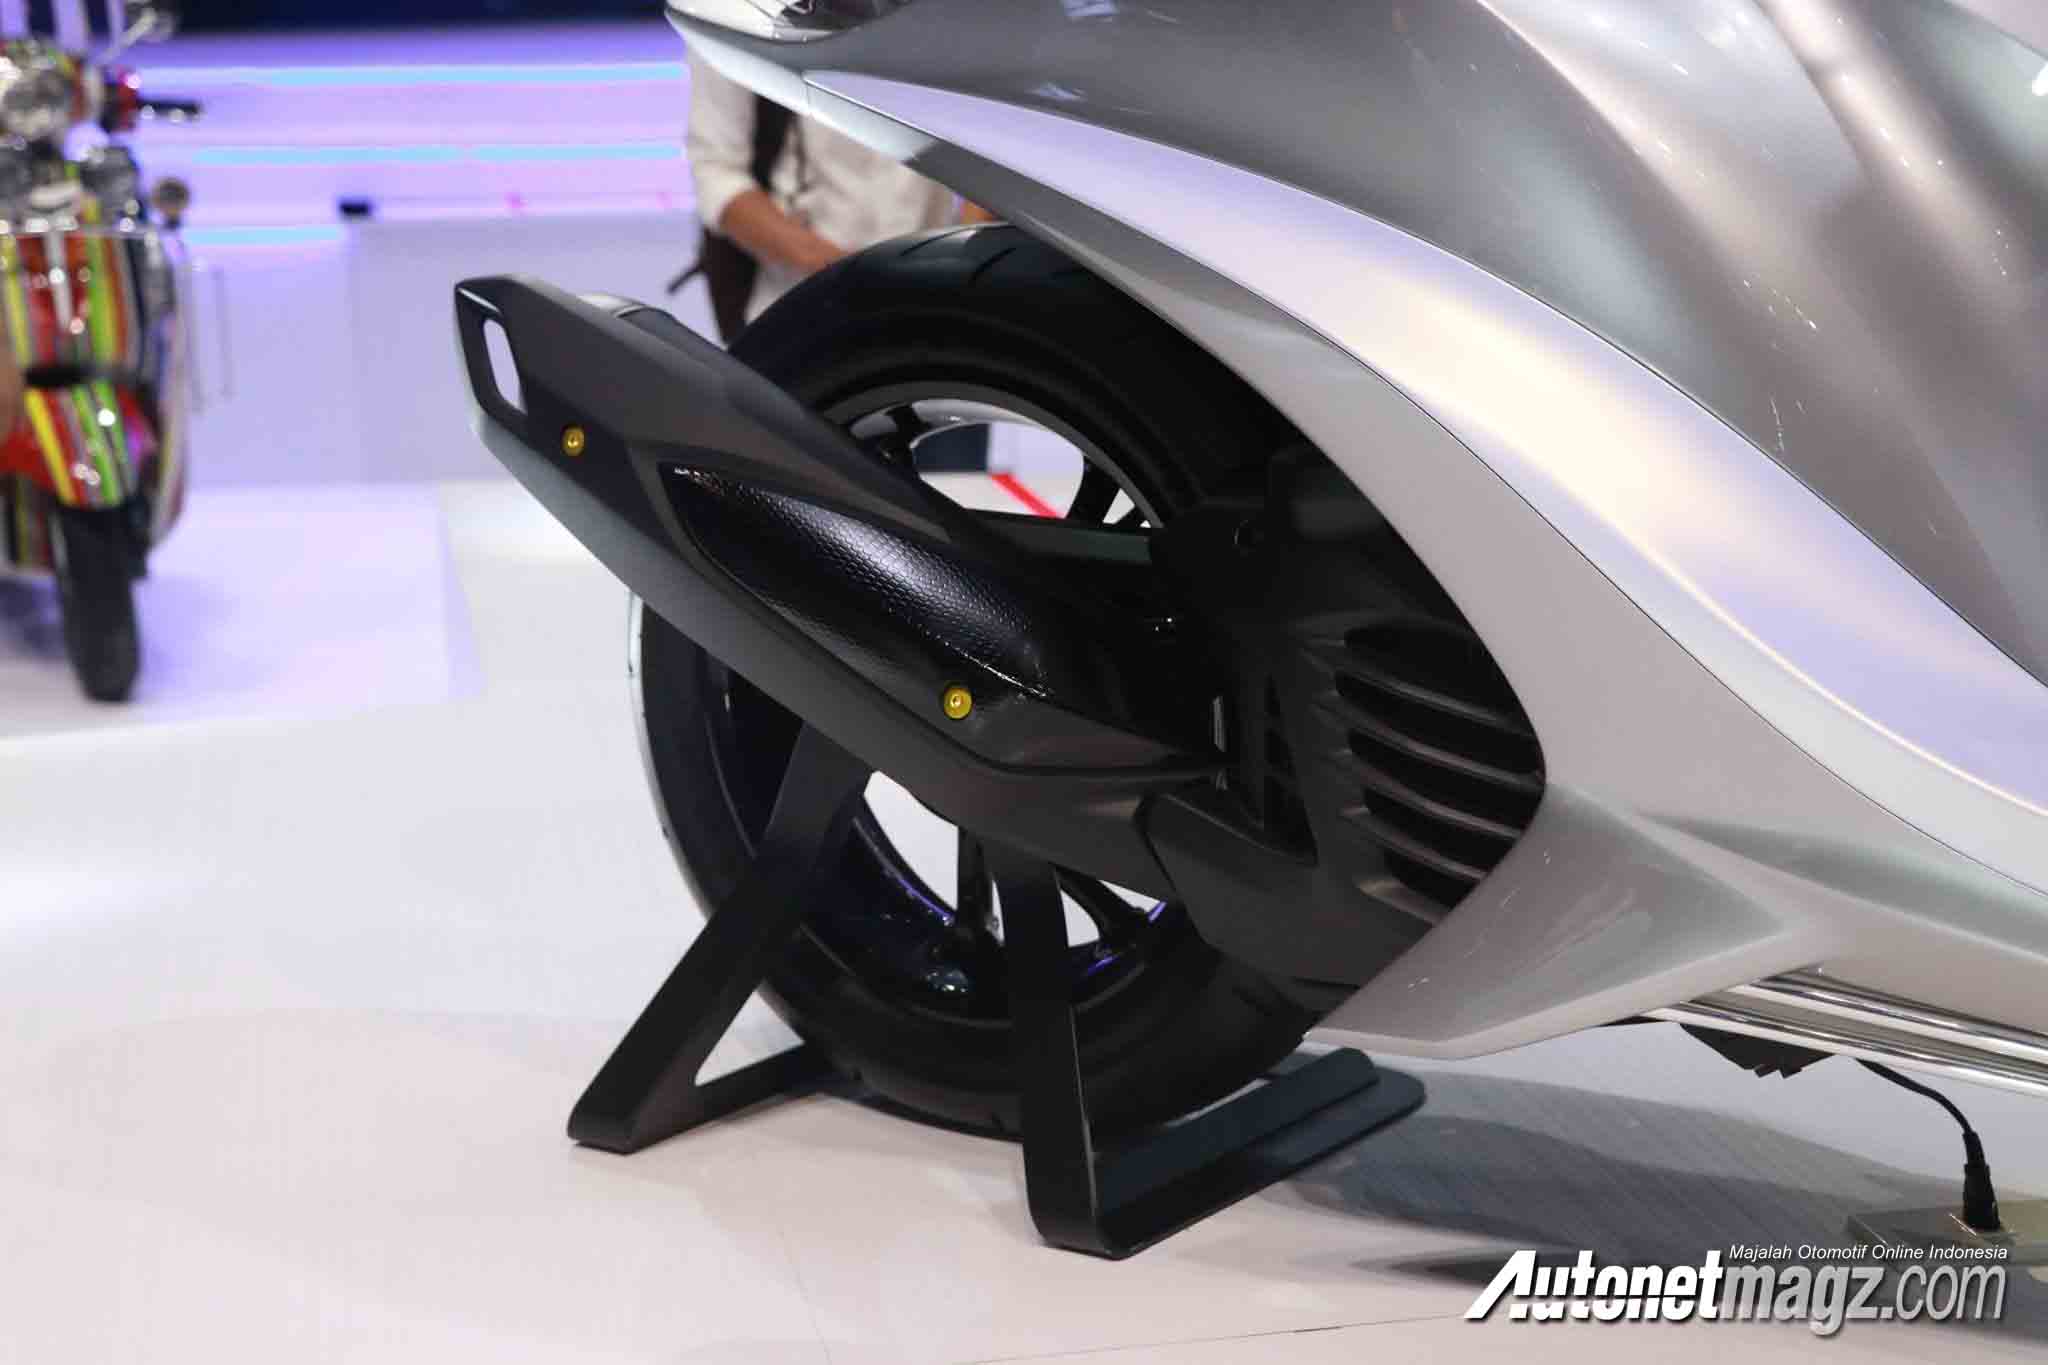 Berita, kaki kaki Yamaha Glorious: Yamaha Perkenalkan Glorious Concept, Skutik Cantik Nan Futuristis